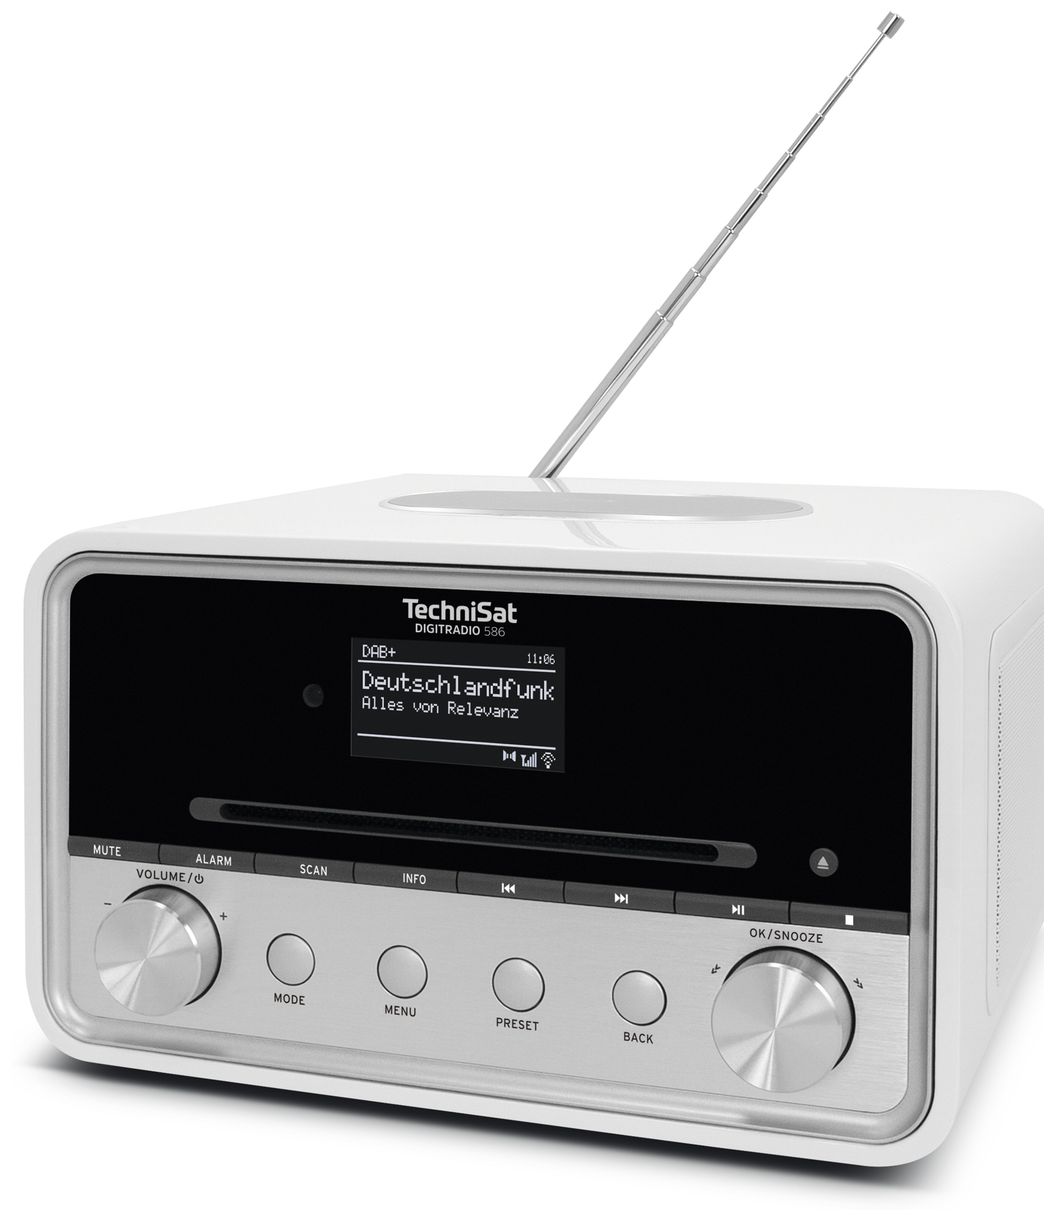 Digitradio 586 Bluetooth DAB+, FM Radio (Weiß) 